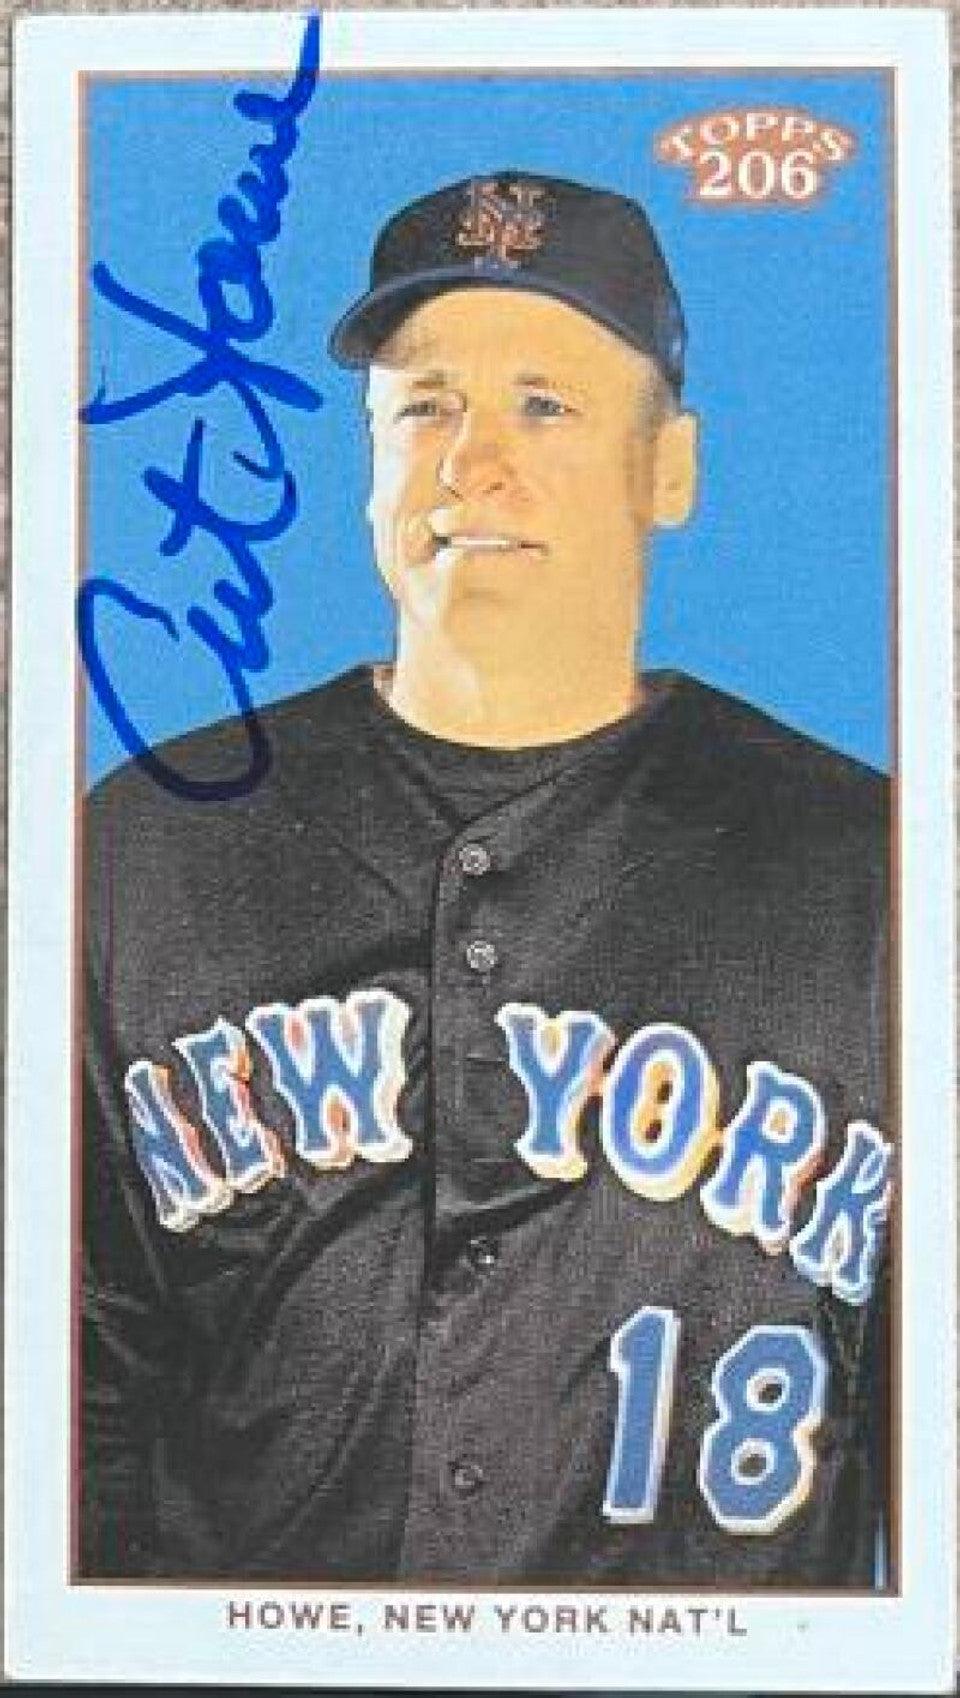 Art Howe Signed 2003 Topps 206 Polar Bear Baseball Card - New York Mets - PastPros